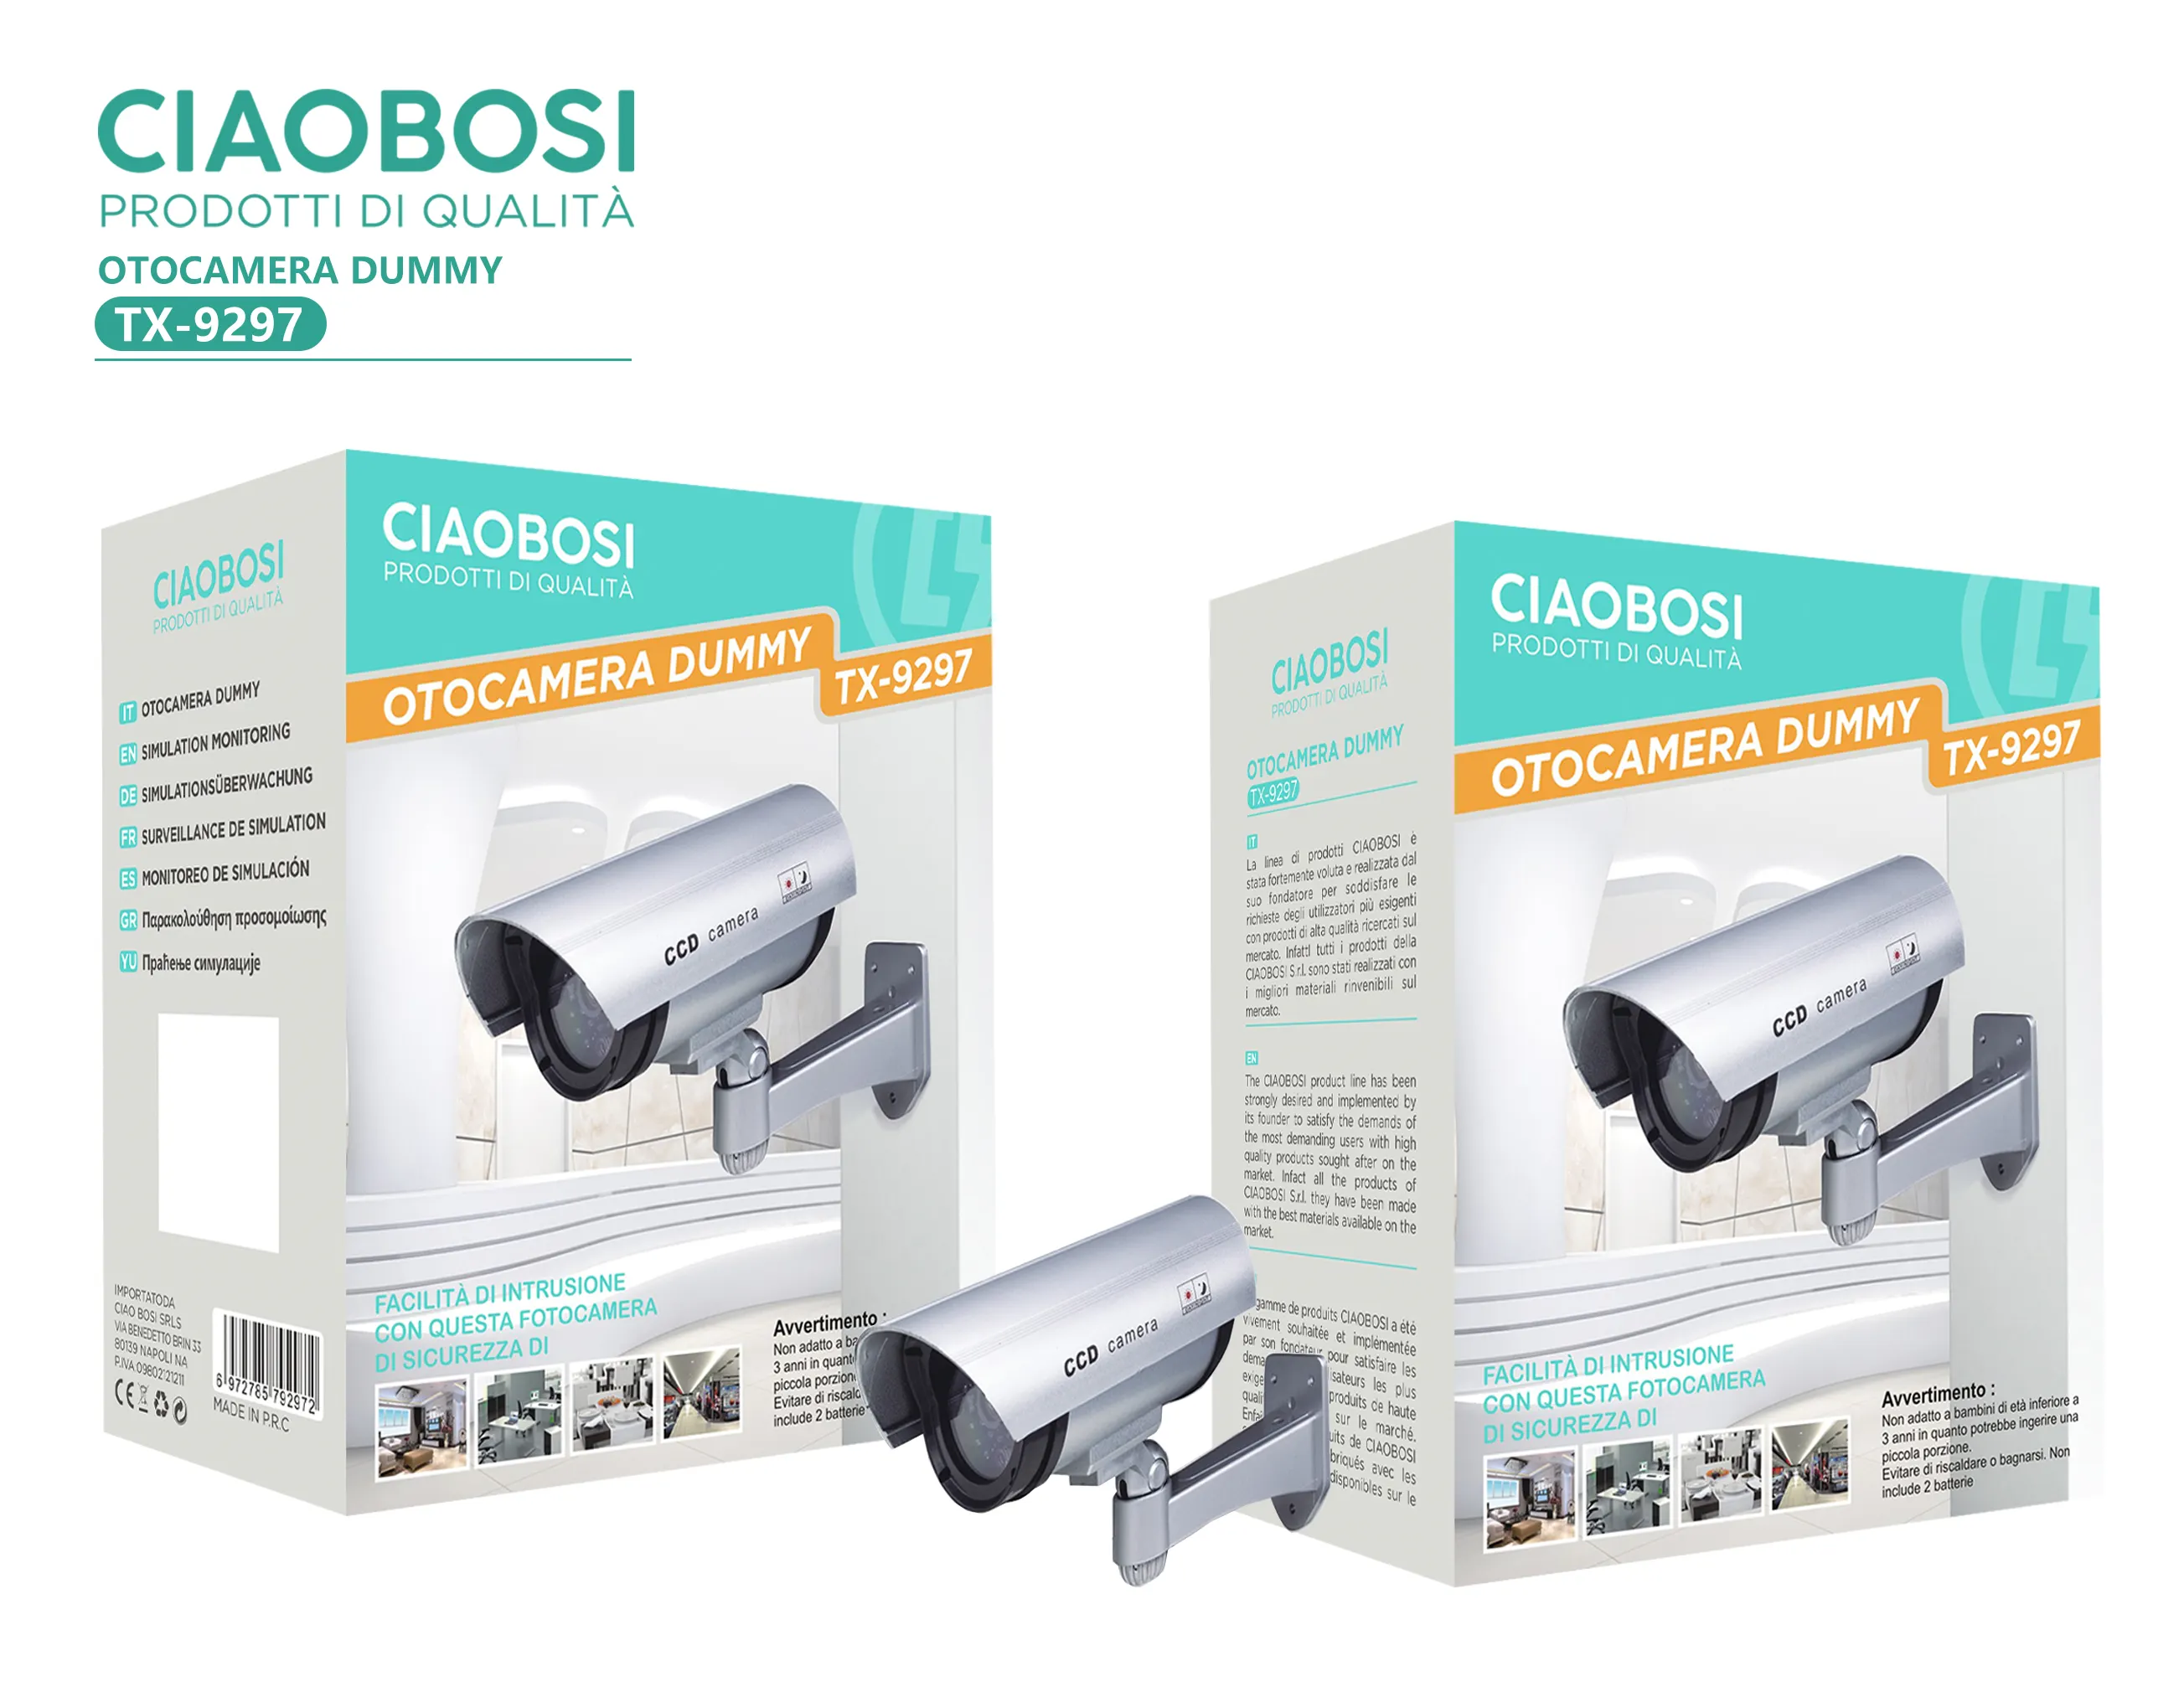 Ciaobosi กล้องกระสุนปืนสีเงิน TX-9297,กล้องกลางแจ้งมองเห็นได้ในที่มืดกล้องกันน้ำอัจฉริยะระบบรักษาความปลอดภัยในบ้านไร้สาย Wif